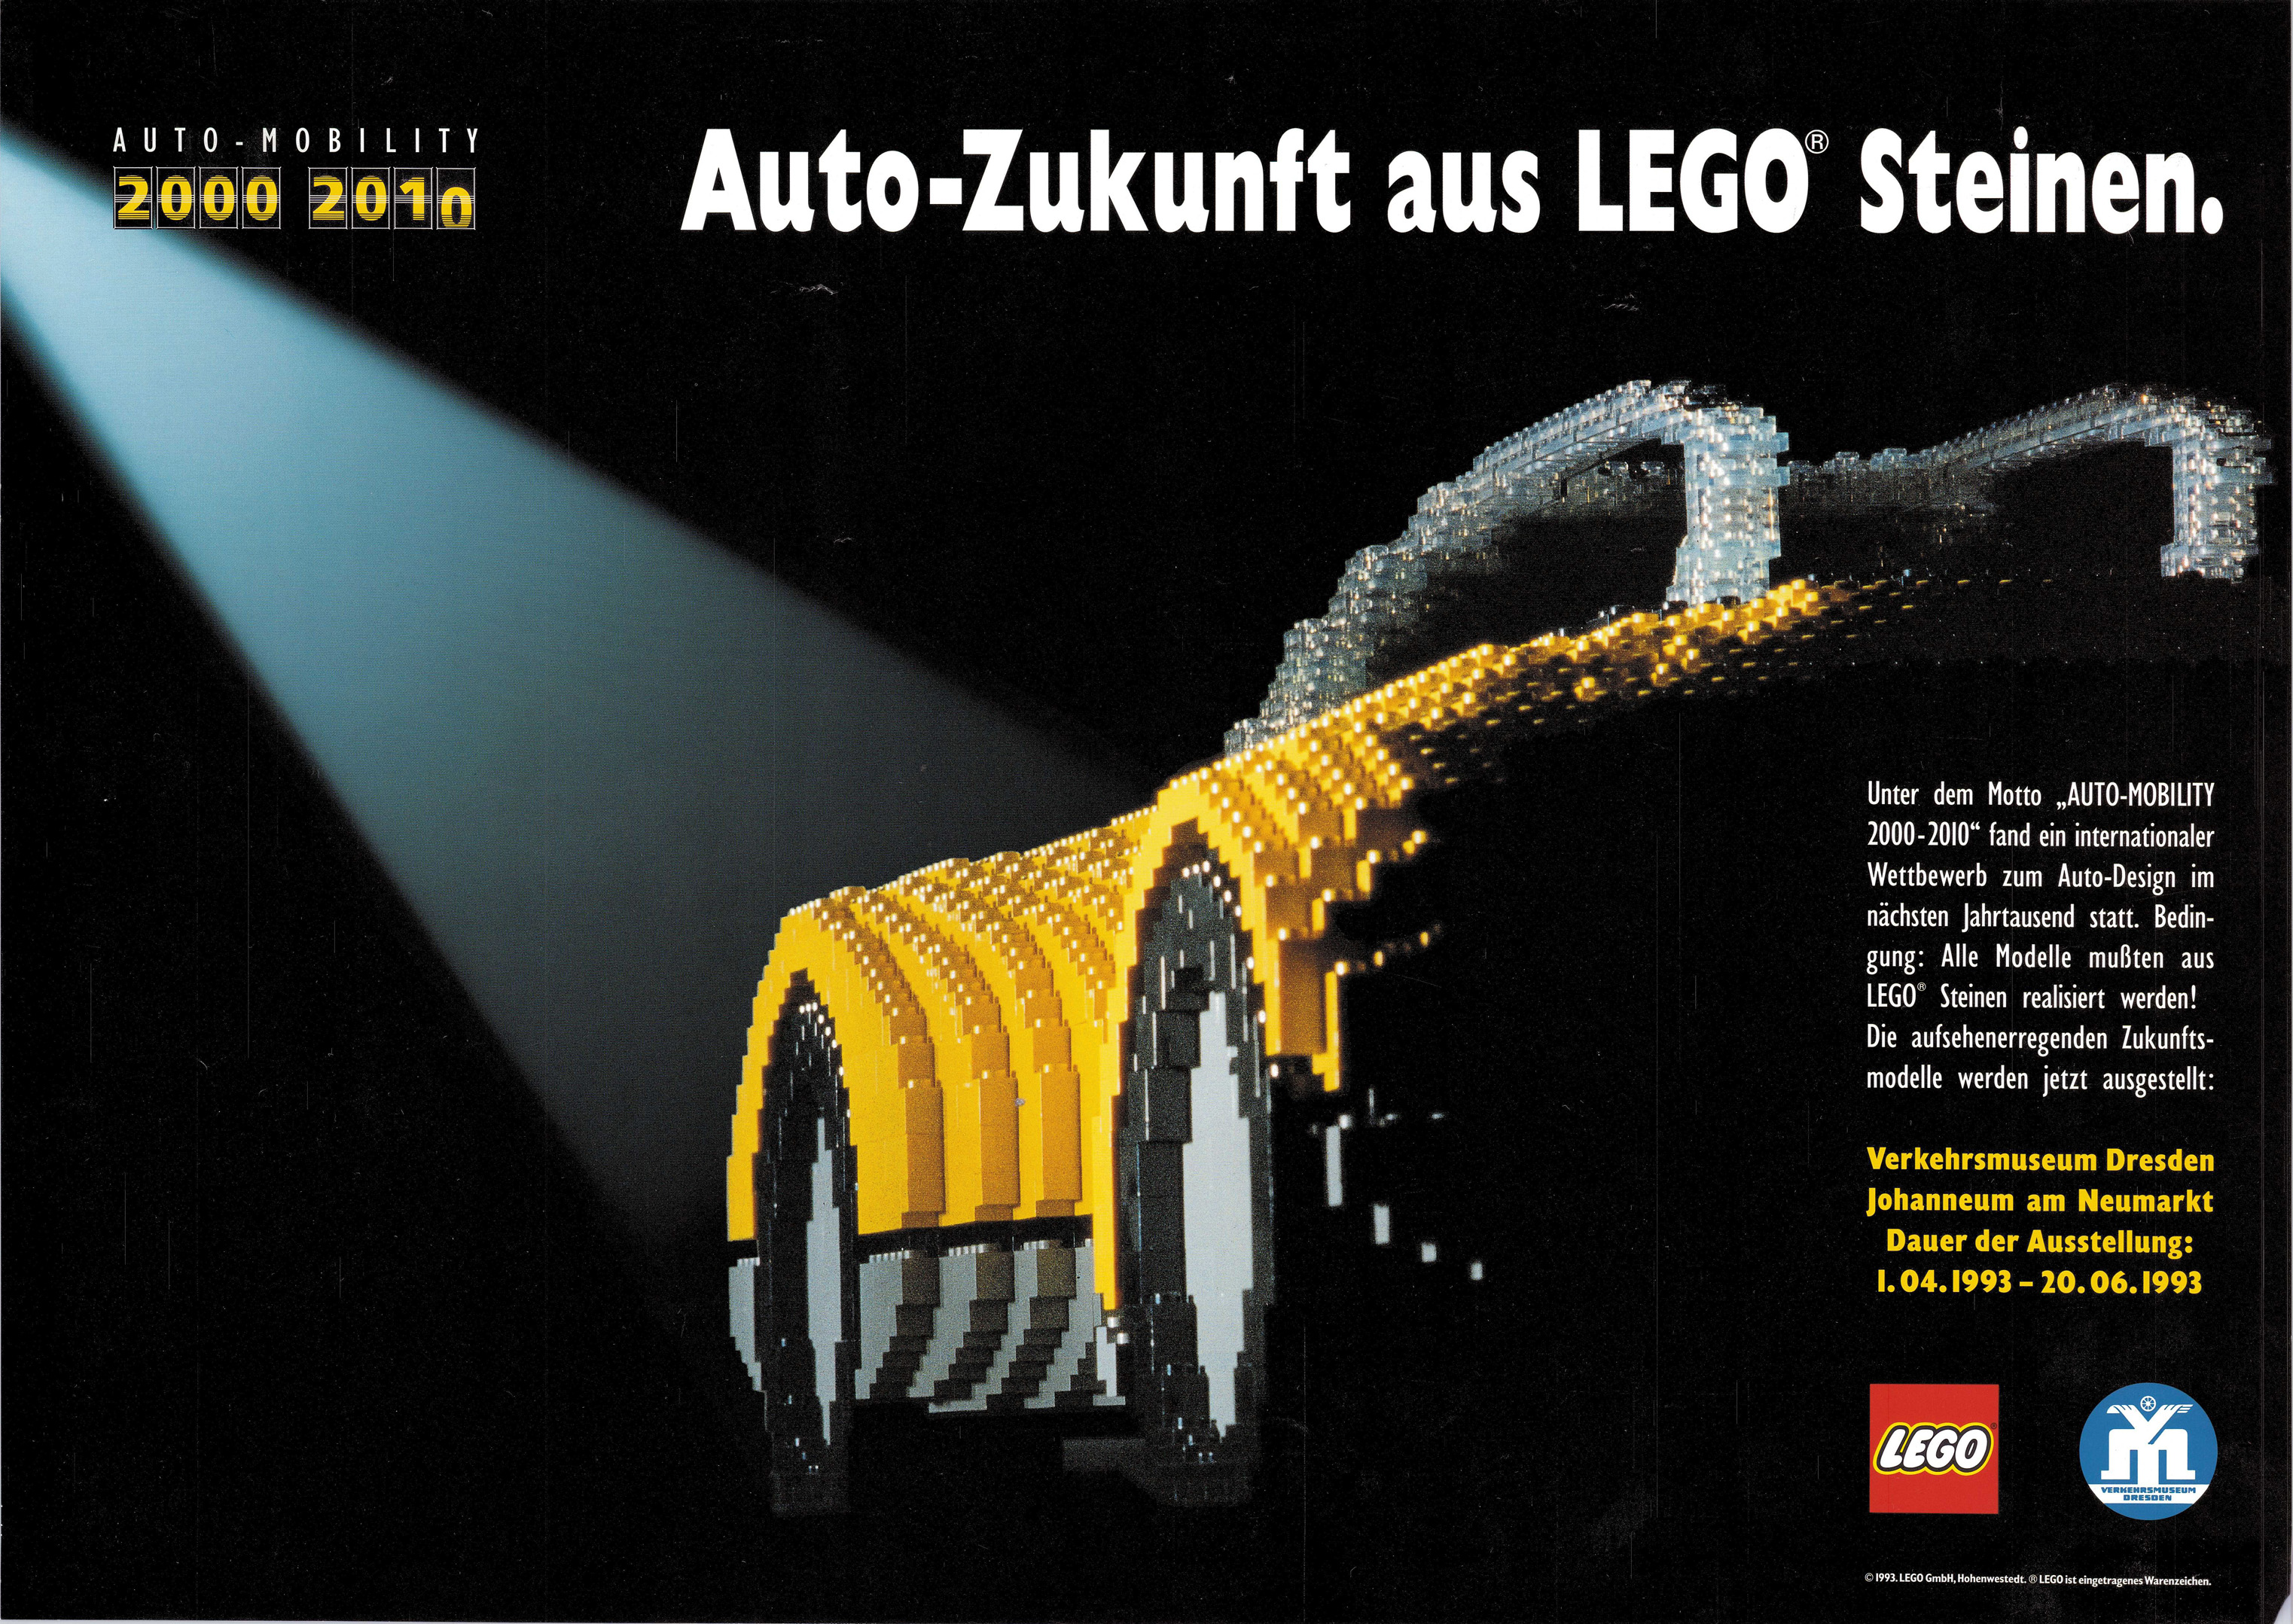 Unter dem Motto „Auto-Mobility 2000-2010“ fand ein internationaler Wettbewerb zum Auto-Design im nächsten Jahrtausend statt. Bedingung: Alle Modelle mussten aus Legosteinen realisiert werden! Die aufsehenerregenden Zukunftsmodelle werden jetzt ausgestellt